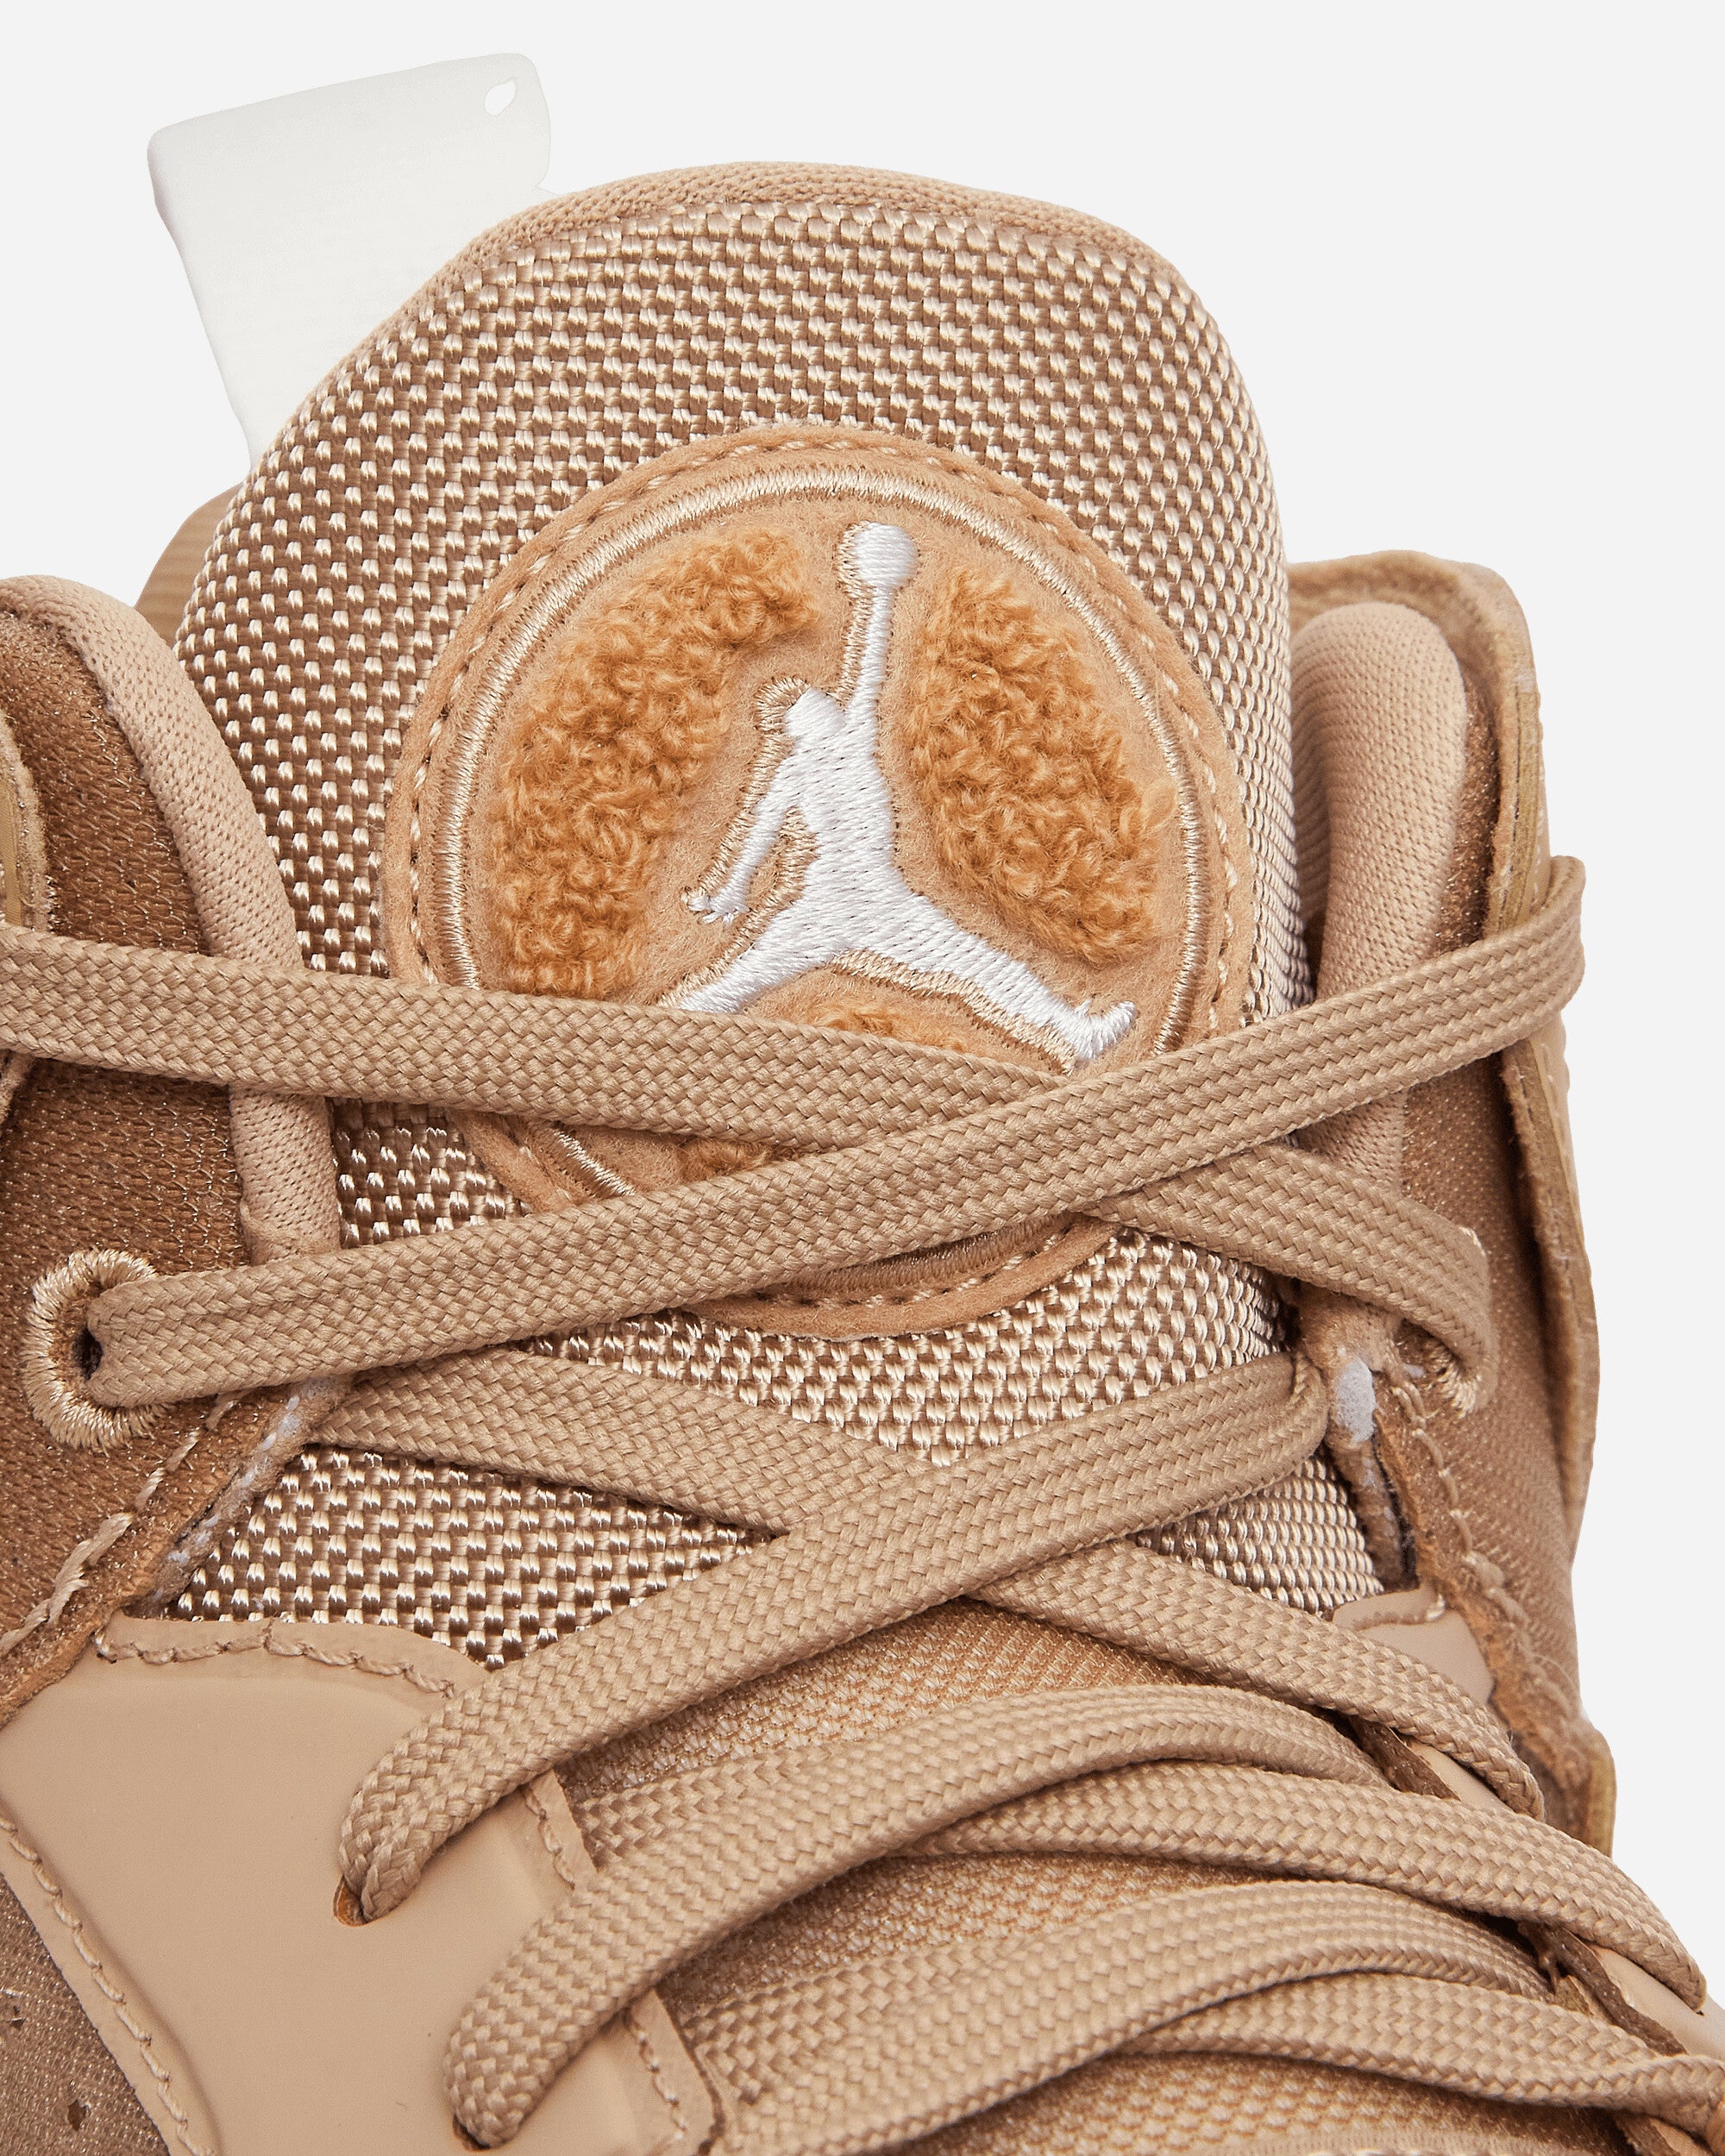 Nike Jordan Wmns Jumpman Two Trey Desert/White Sneakers Low DR9631-201